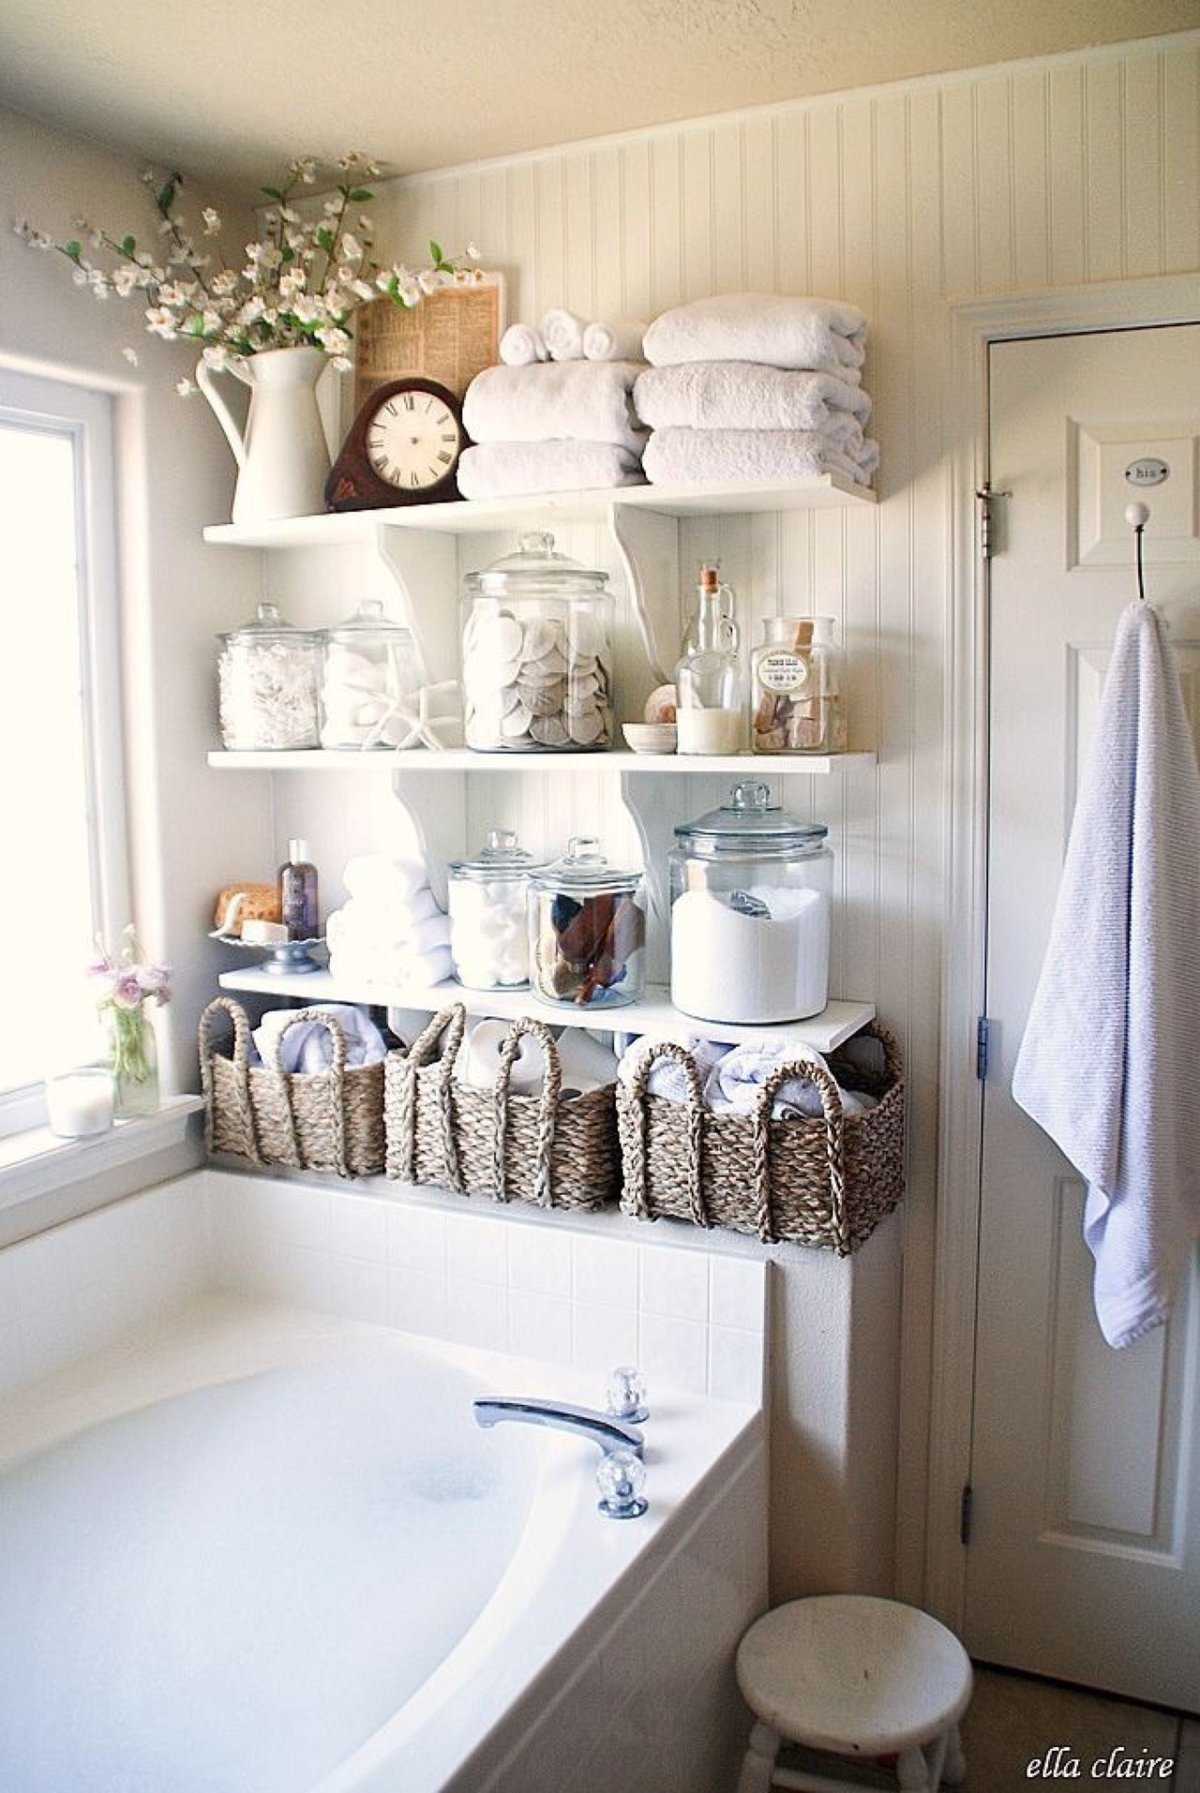 Системы хранения для ванной комнаты: идеи для расчесок, шампуней, под раковиной